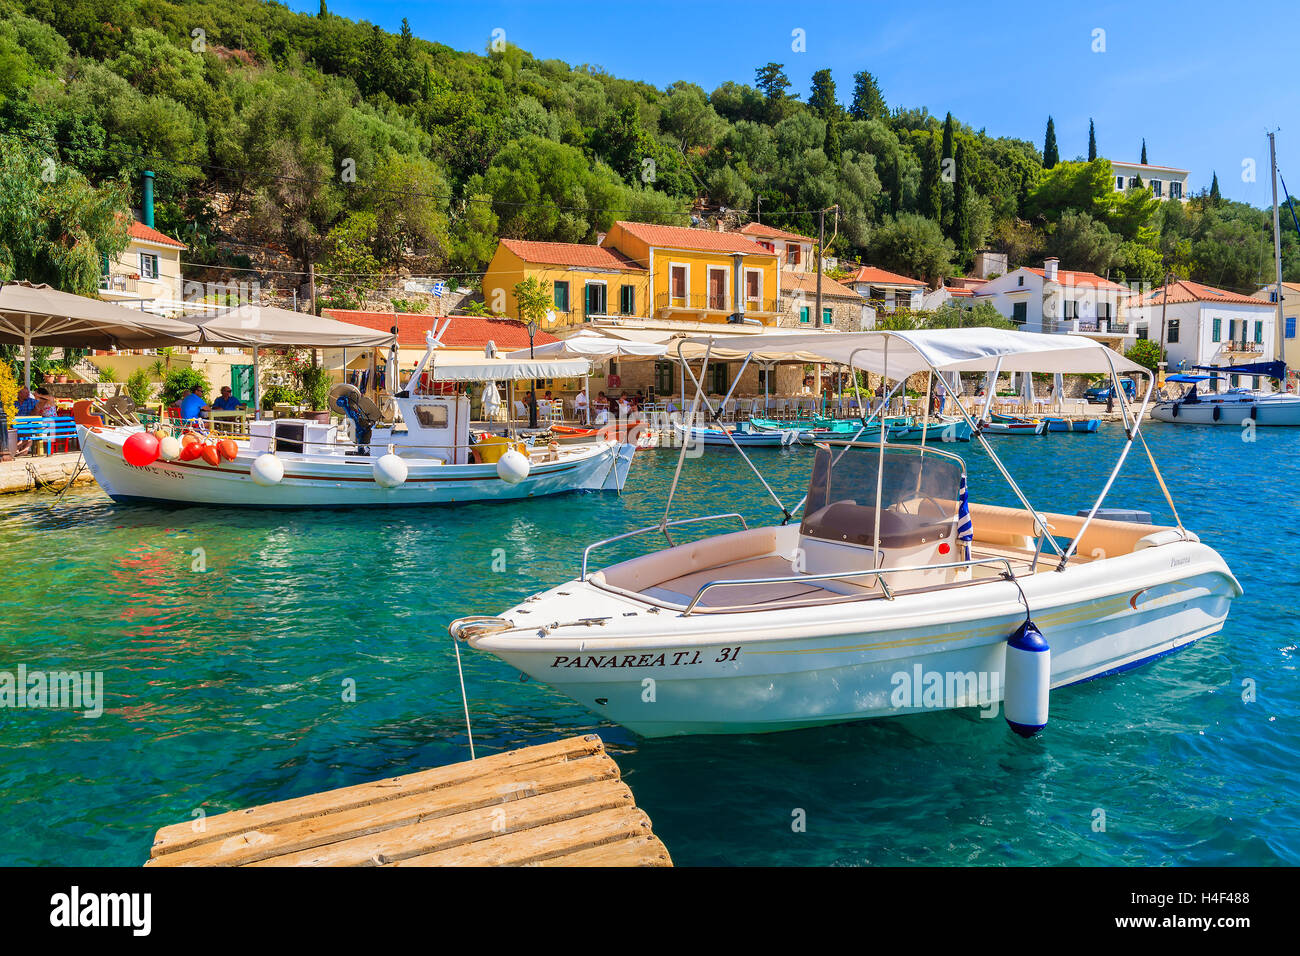 KIONI PORTA, Itaca isola - Sep 19, 2014: barca sul mare turchese acqua nella porta di Kioni. La Grecia è molto popolare meta di vacanza in Europa. Foto Stock